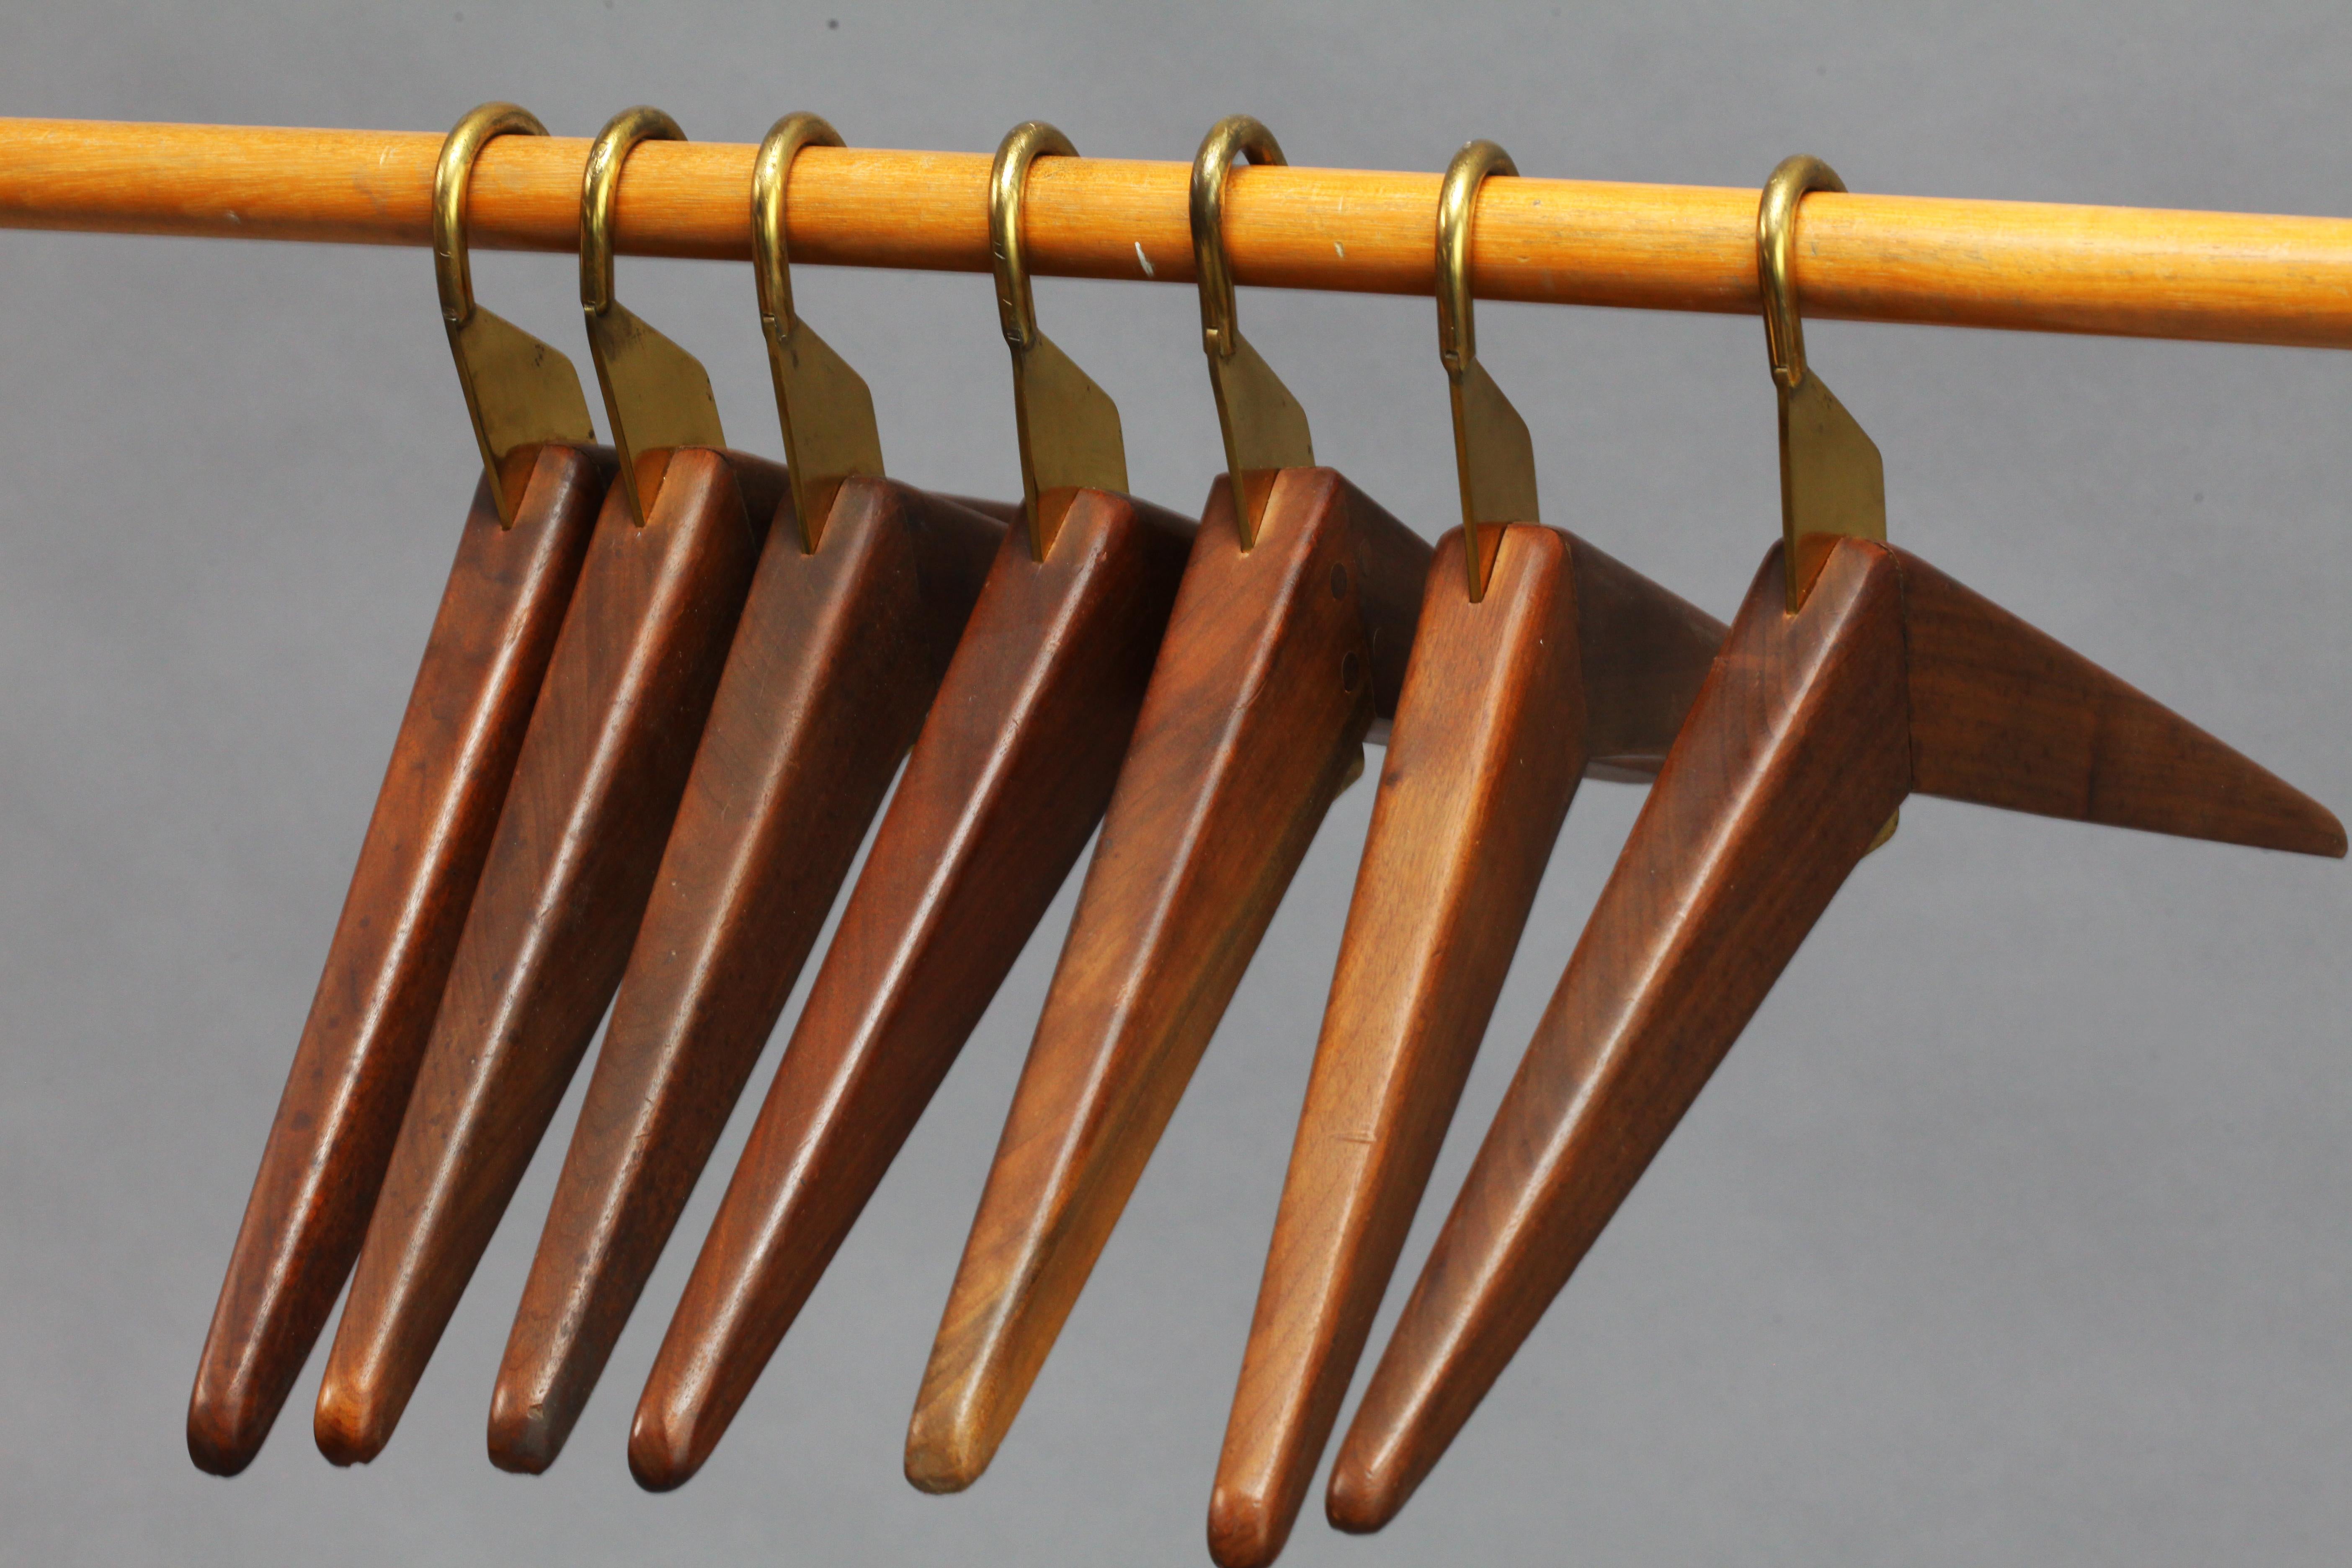 Brass seven cloth hanger, attributed Hagenauer, Vienna 1950, solid wood, brass